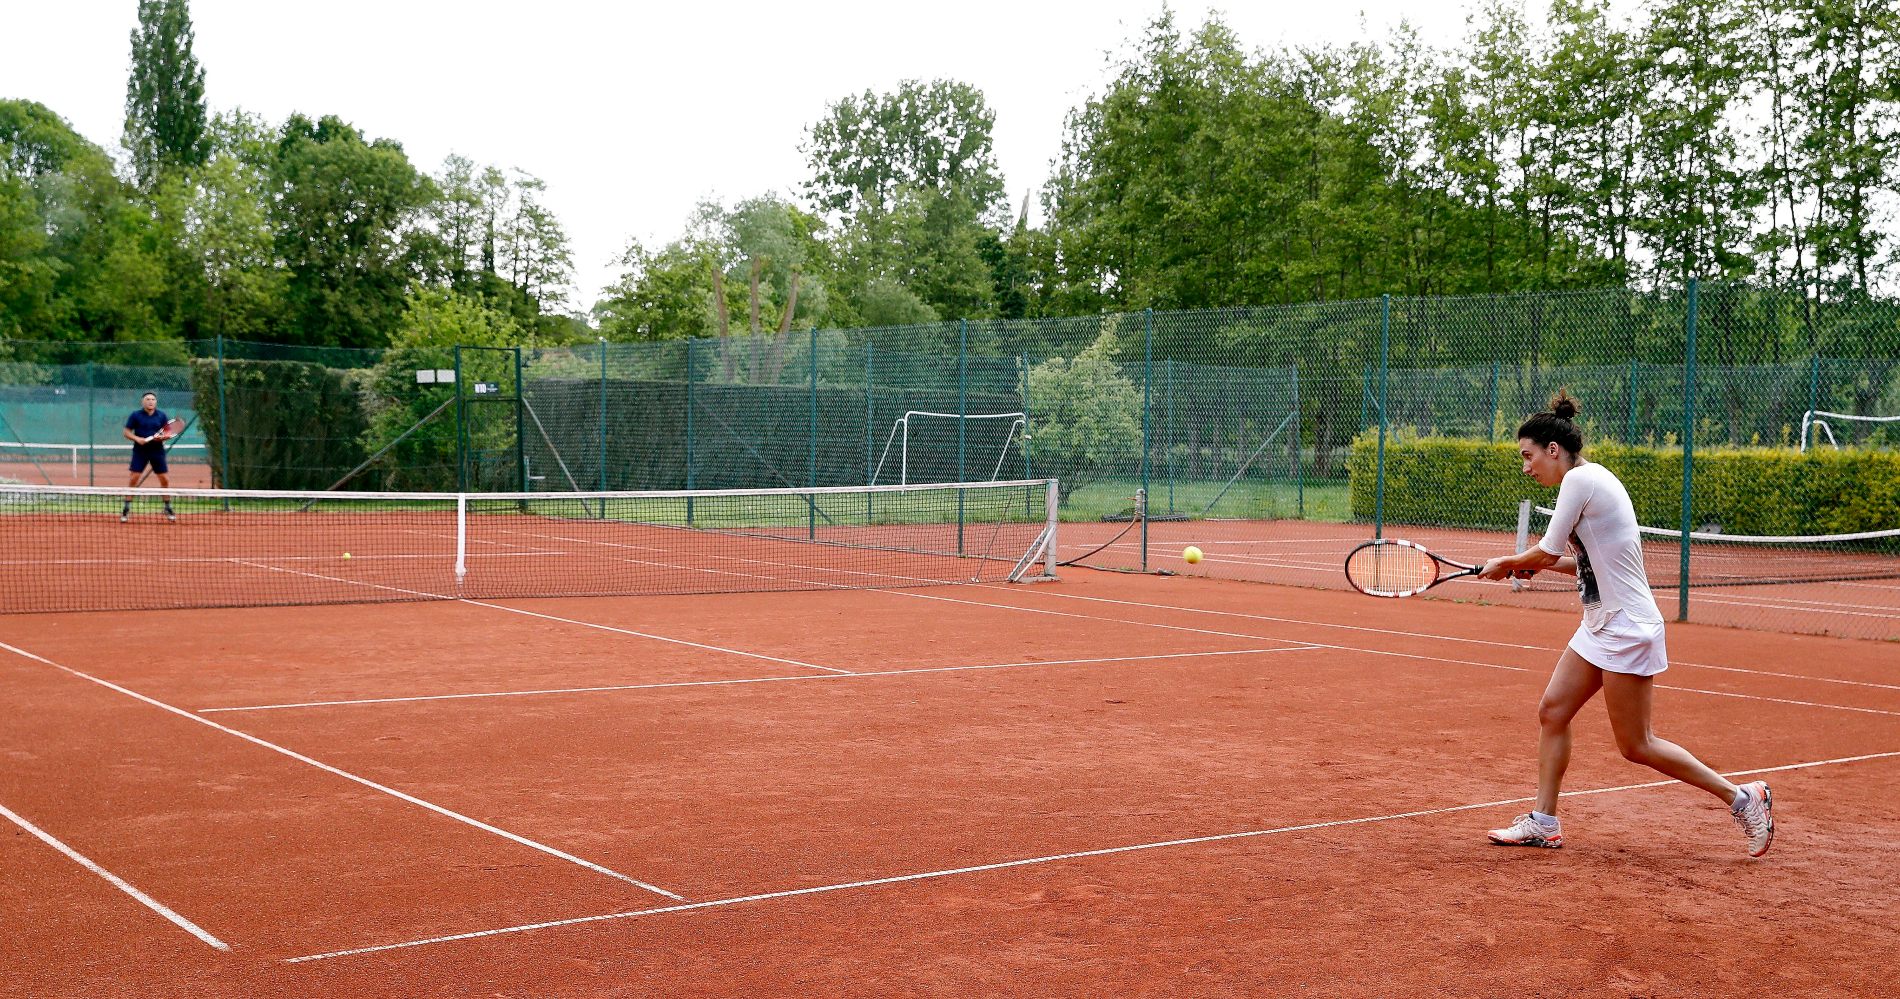 La pratique du tennis est déjà autorisée en Belgique et dans beaucoup d'autres pays d'Europe.